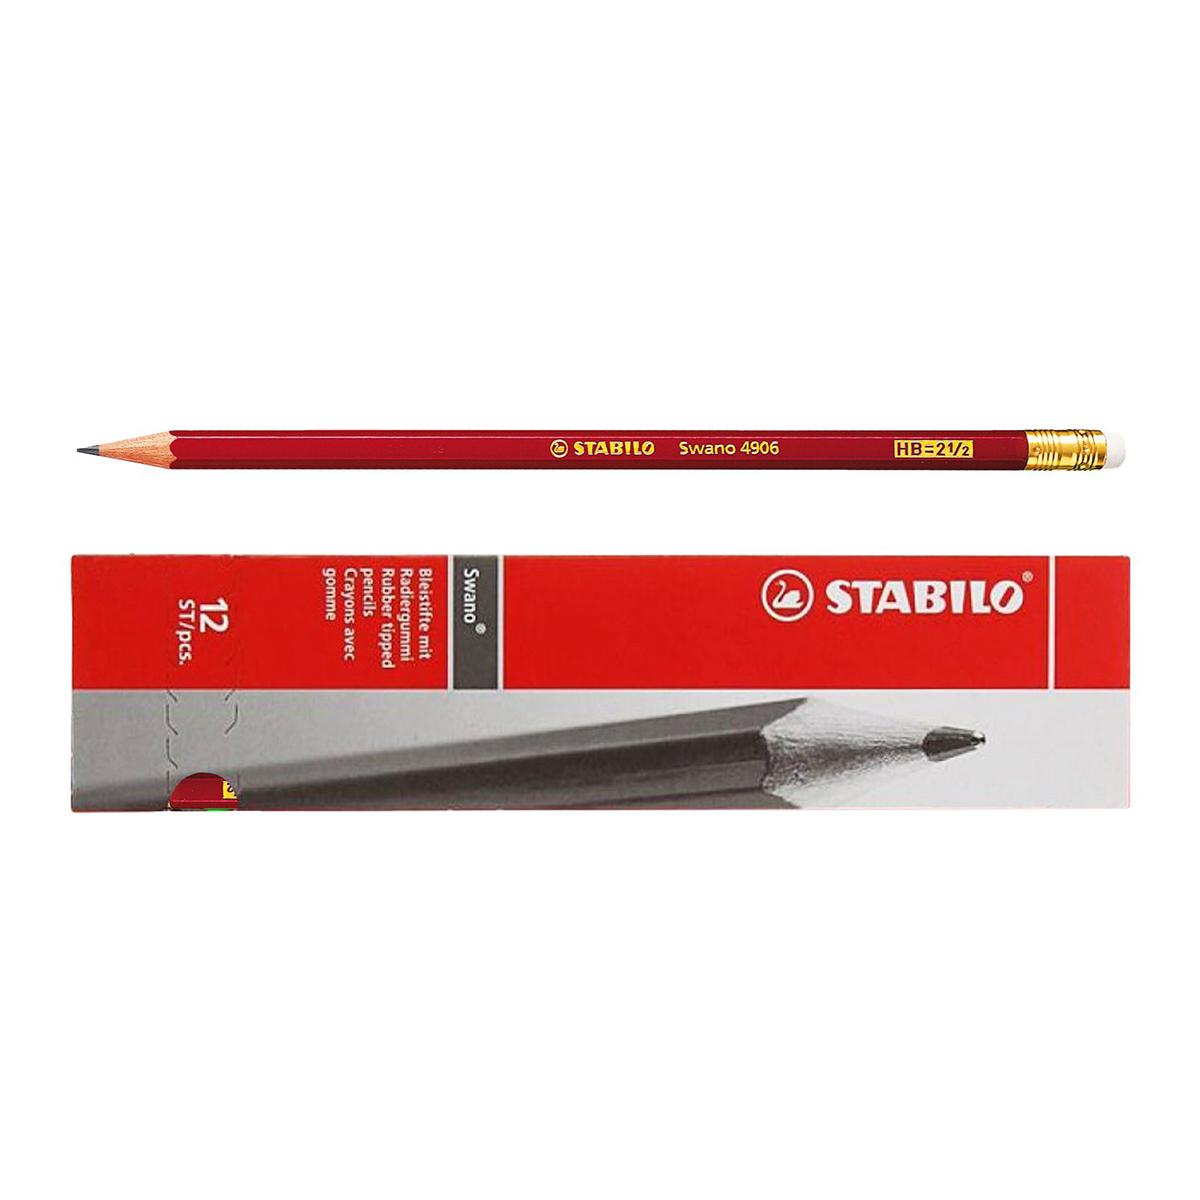 Creion grafit Stabilo Swano 4906, mina HB, cu radiera, rosu, ascutit